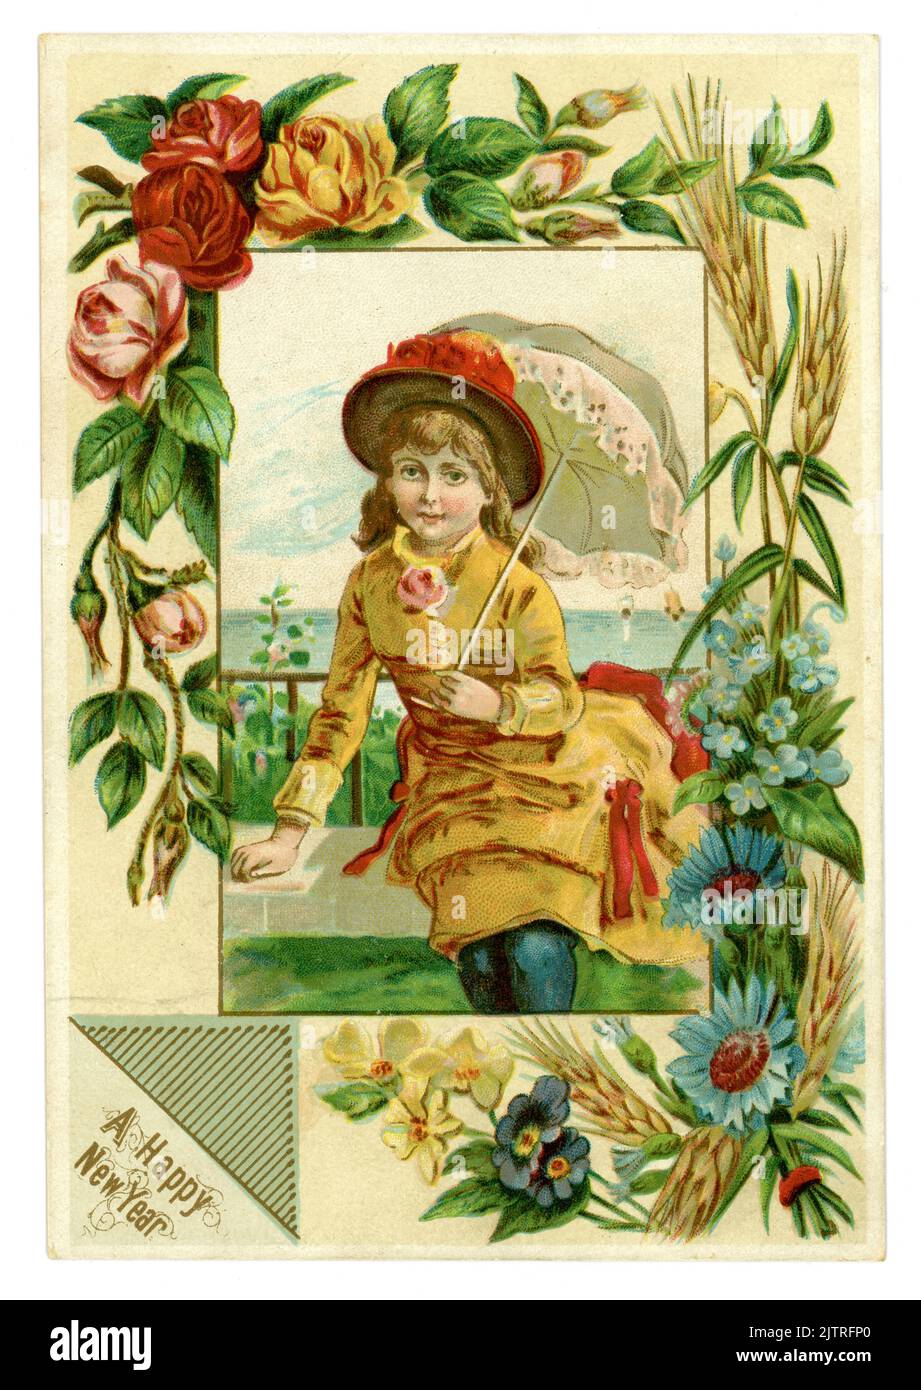 Original y atractiva tarjeta de felicitación victoriana de Año Nuevo de una bonita chica joven con sombrero, sombrilla, hermoso borde de flores de verano (forget-me-nots, cornflowers, rosas, trigo) El título es 'Wishing A Happy New Year', alrededor de 1888, Reino Unido Foto de stock